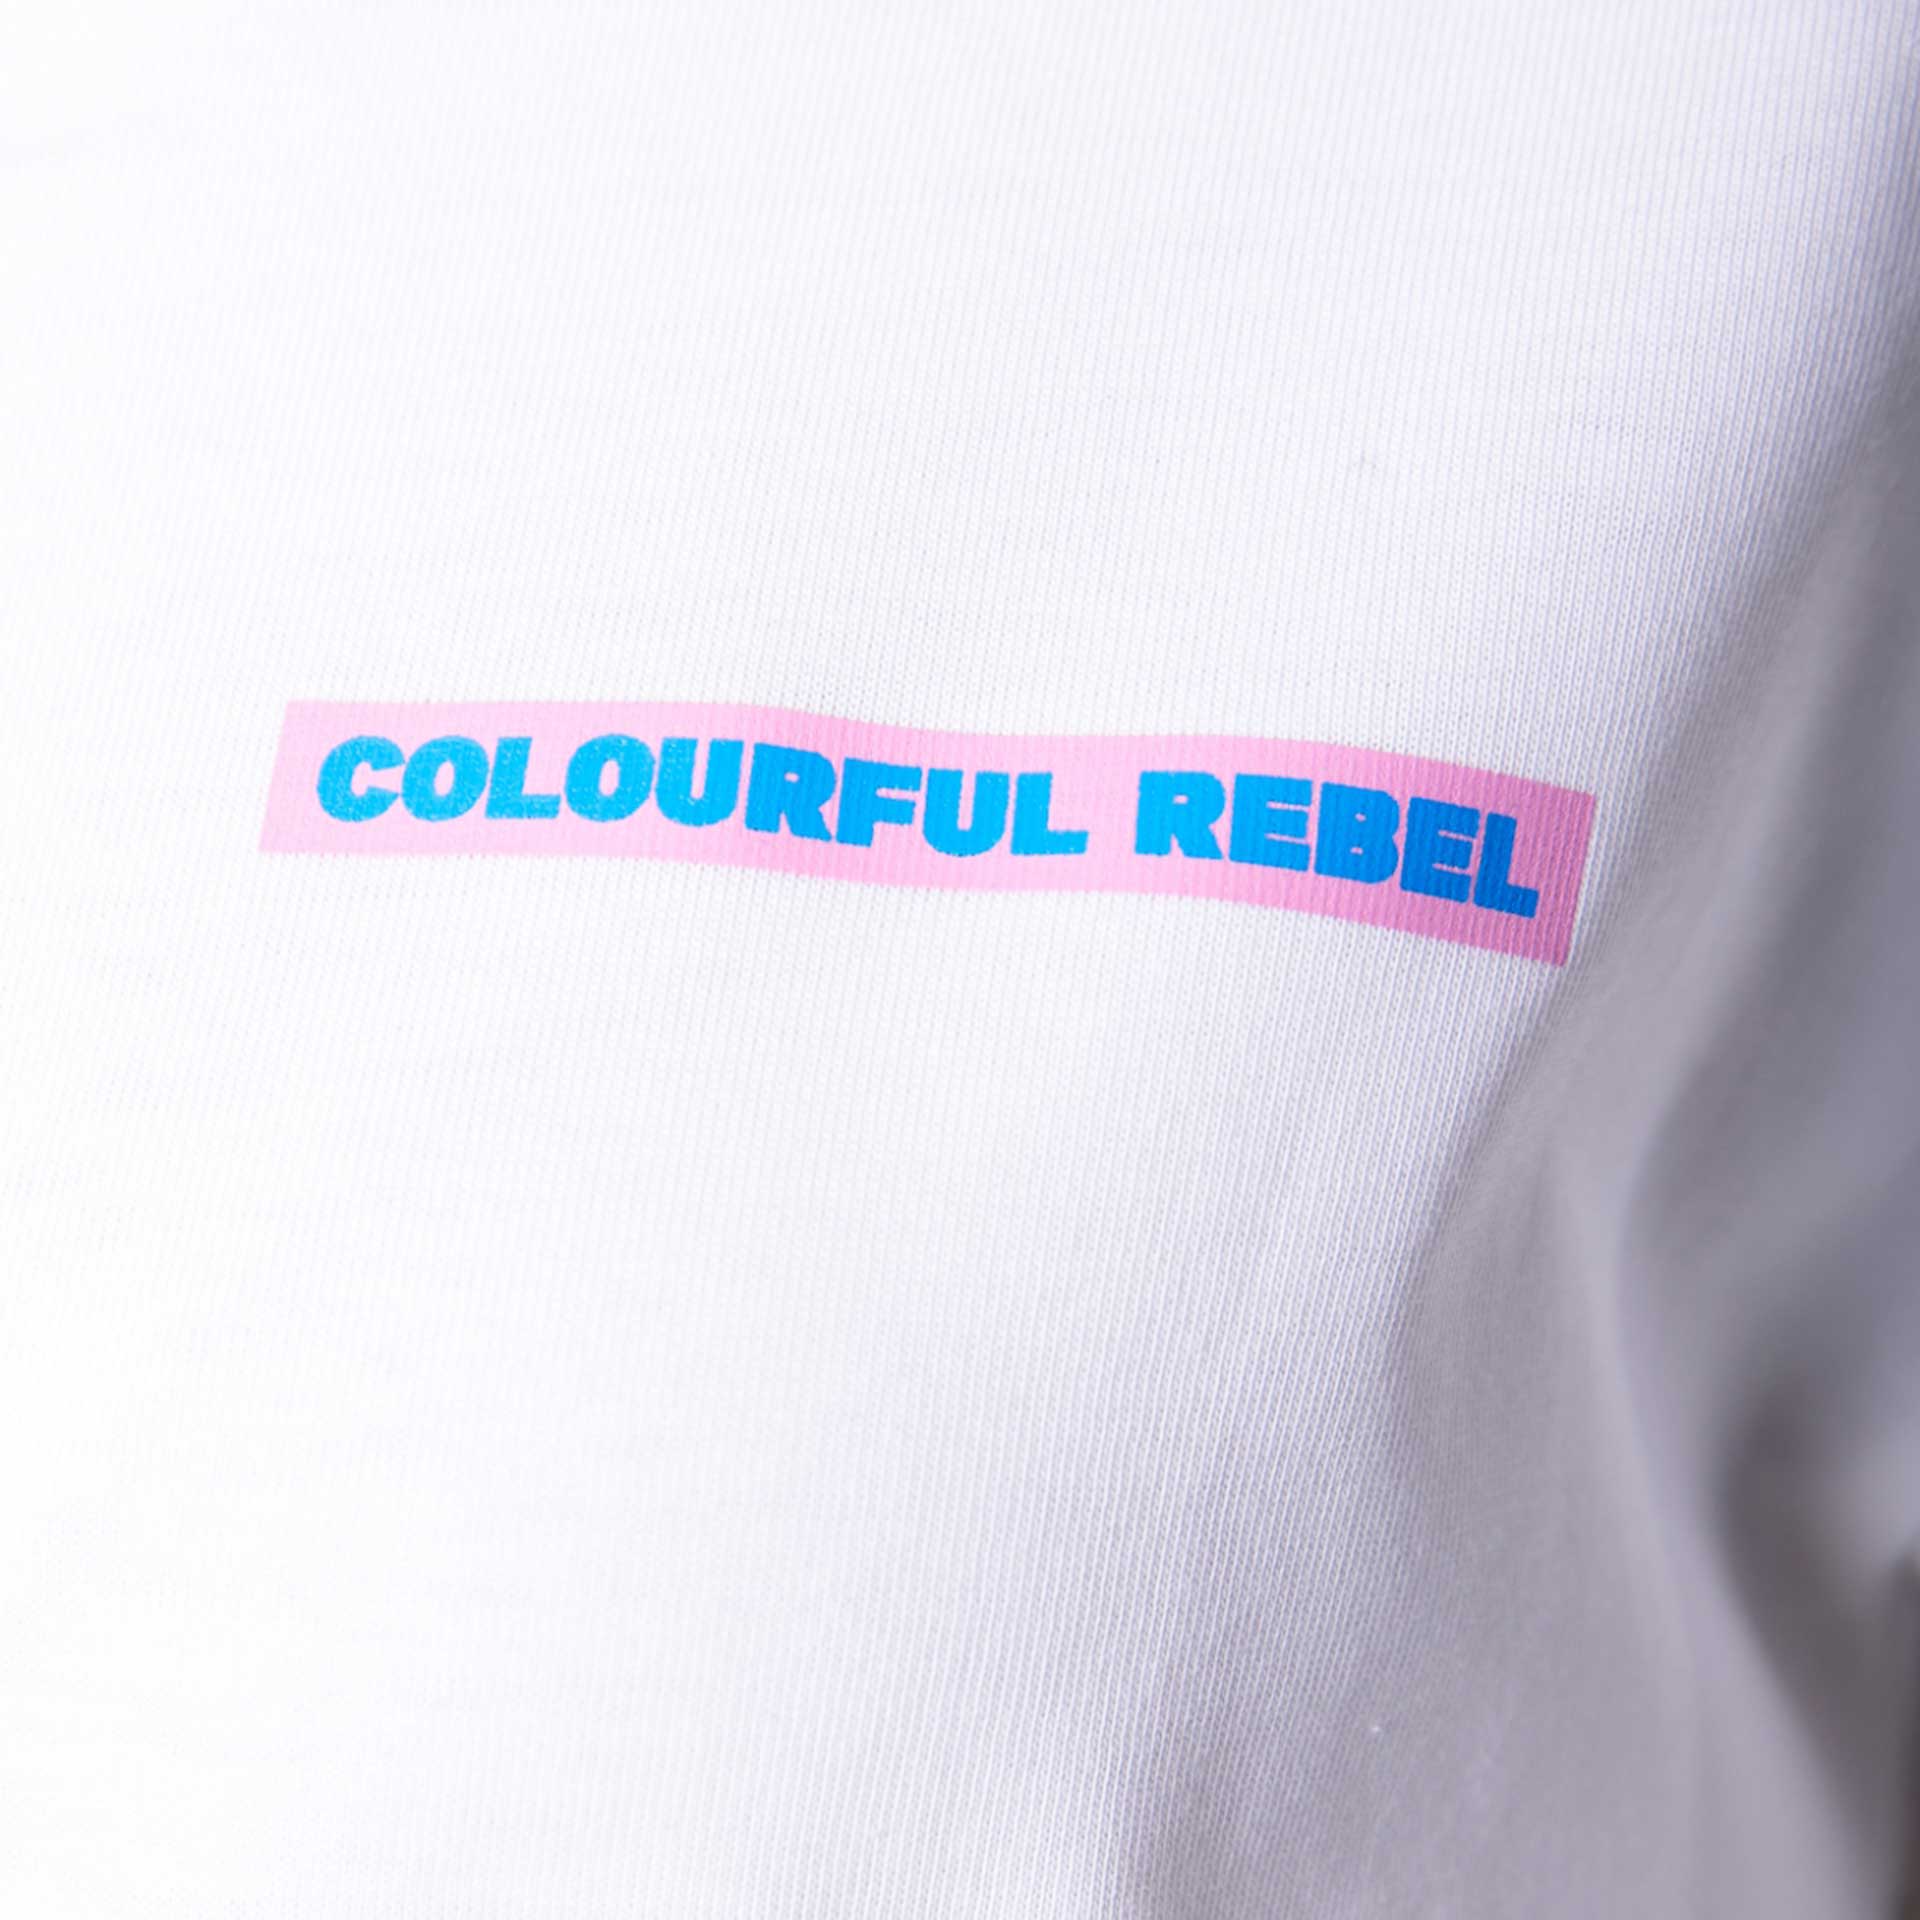 Colourful Rebel T-shirt Sunglasses  4